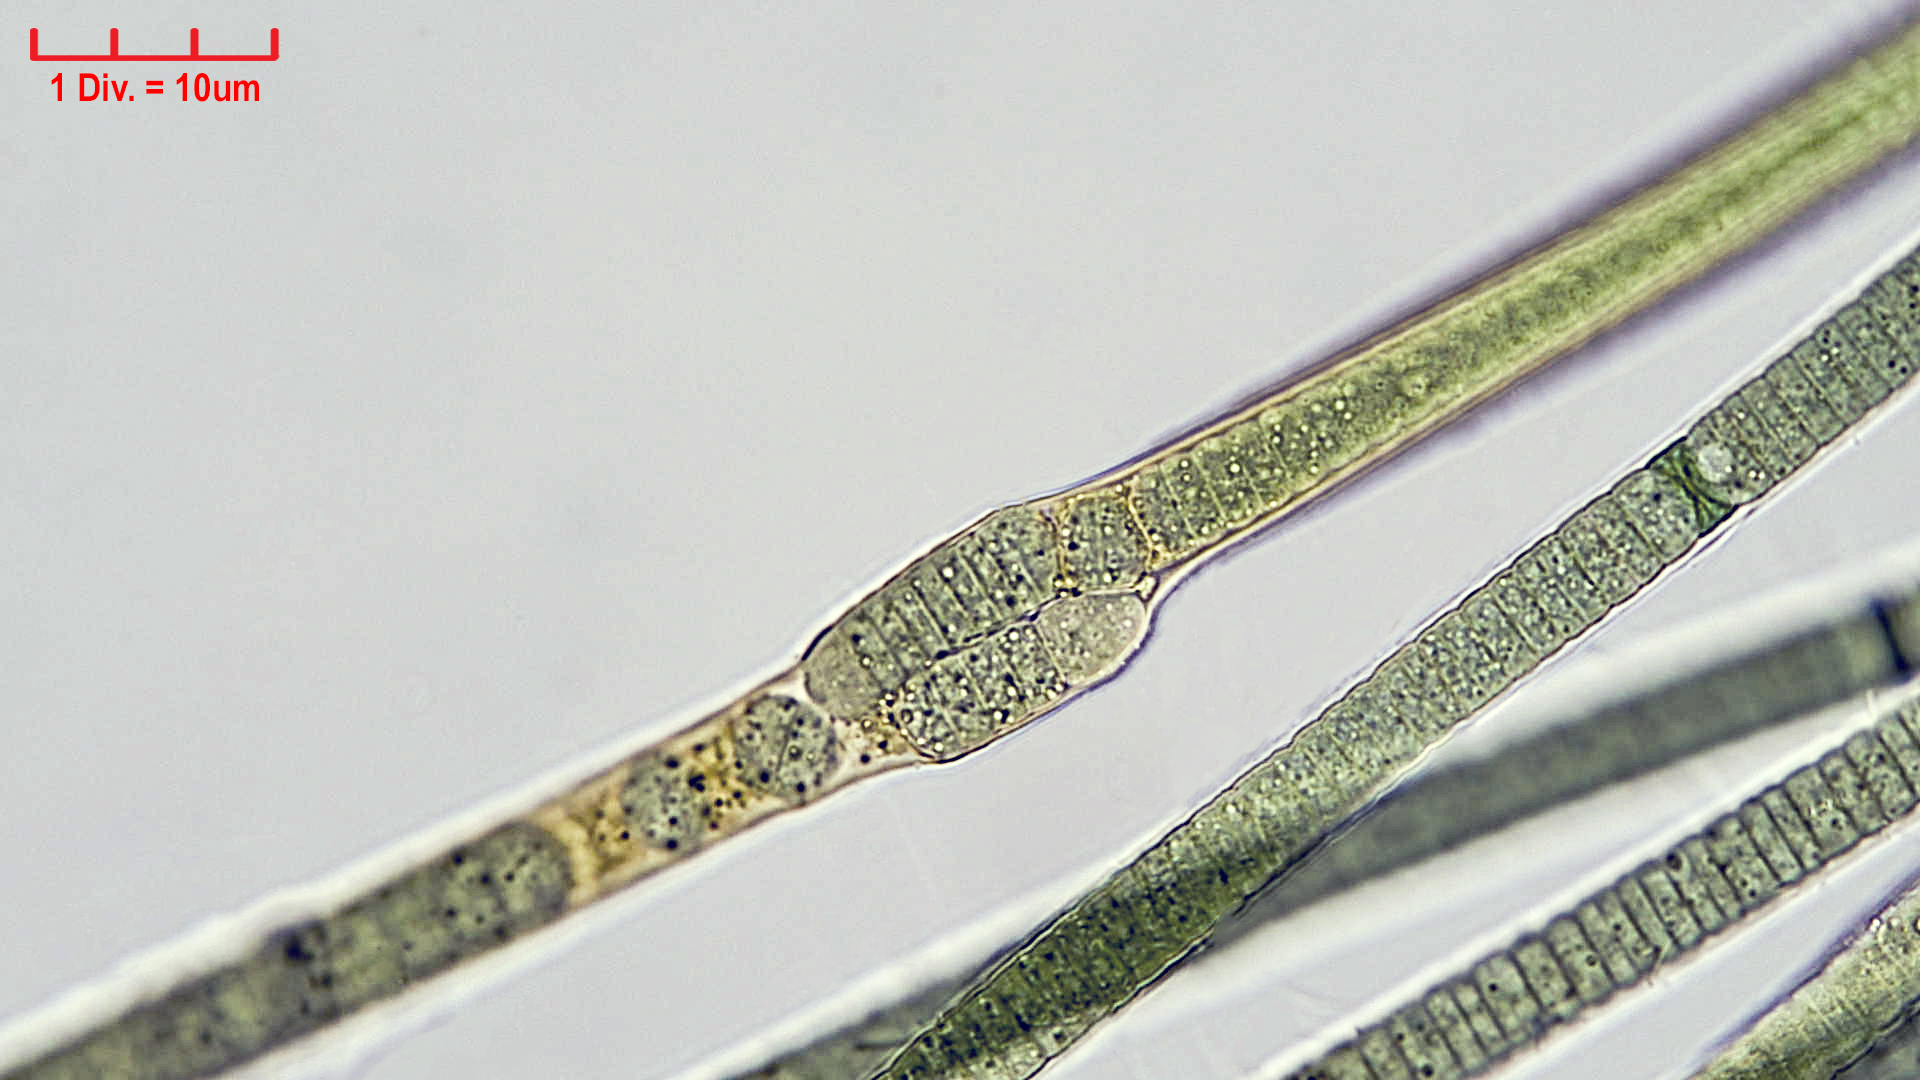 Cyanobacteria/Nostocales/Tolypothrichaceae/Tolypothrix/pencillata/tolypothrix-pencillata-6.jpg